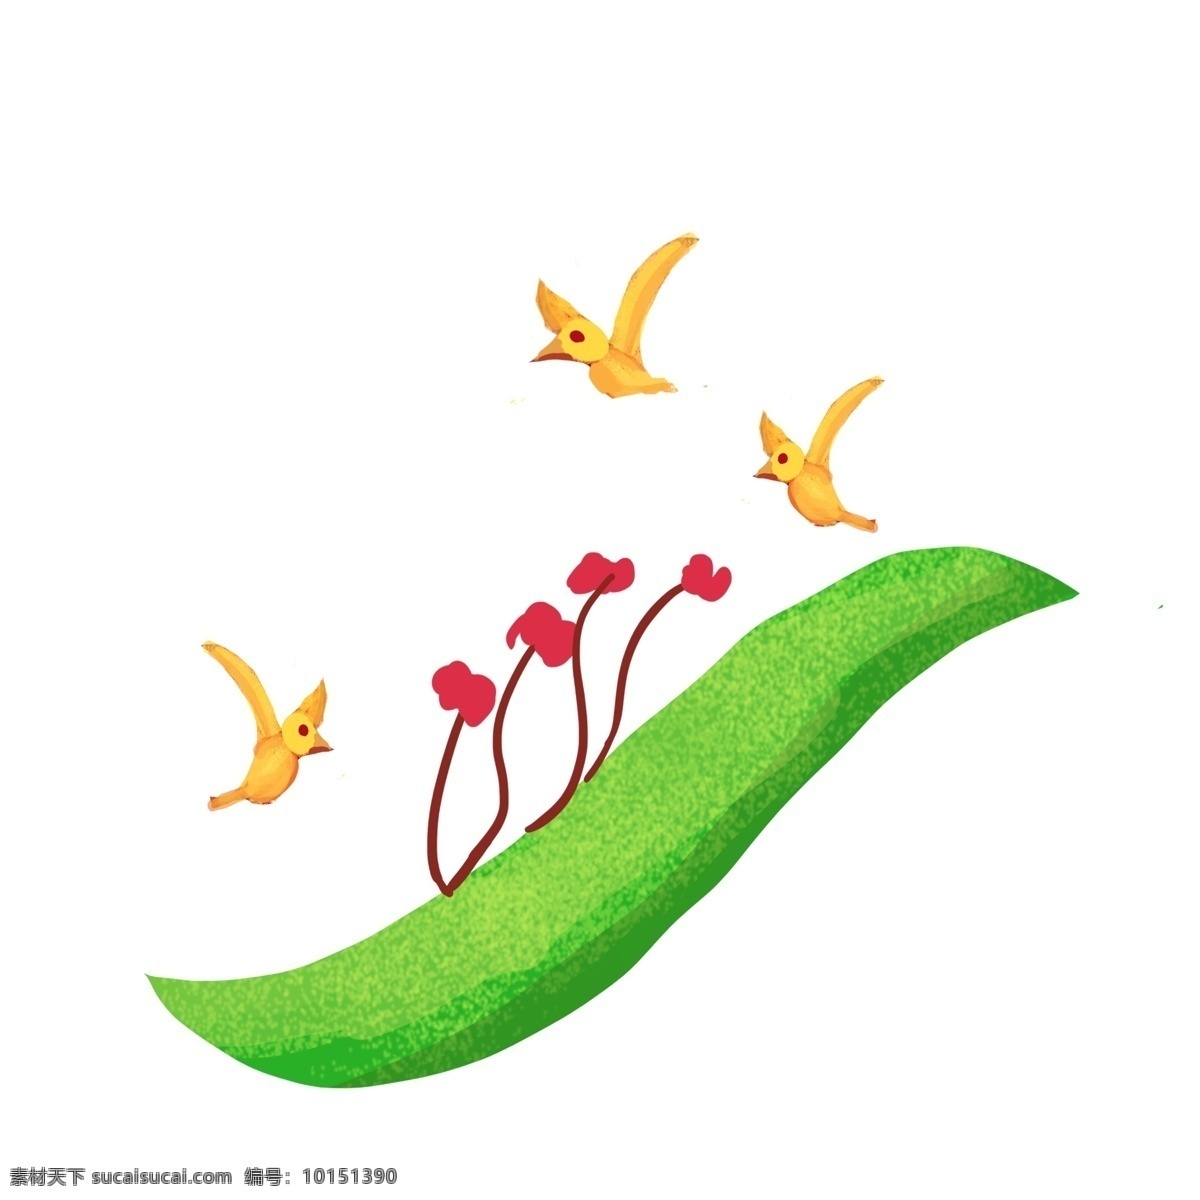 黄色 小鸟 绿叶 装饰 插画 黄色的小鸟 叶子 植物装饰 红色的小花 小动物 飞翔的小鸟 大自然插画